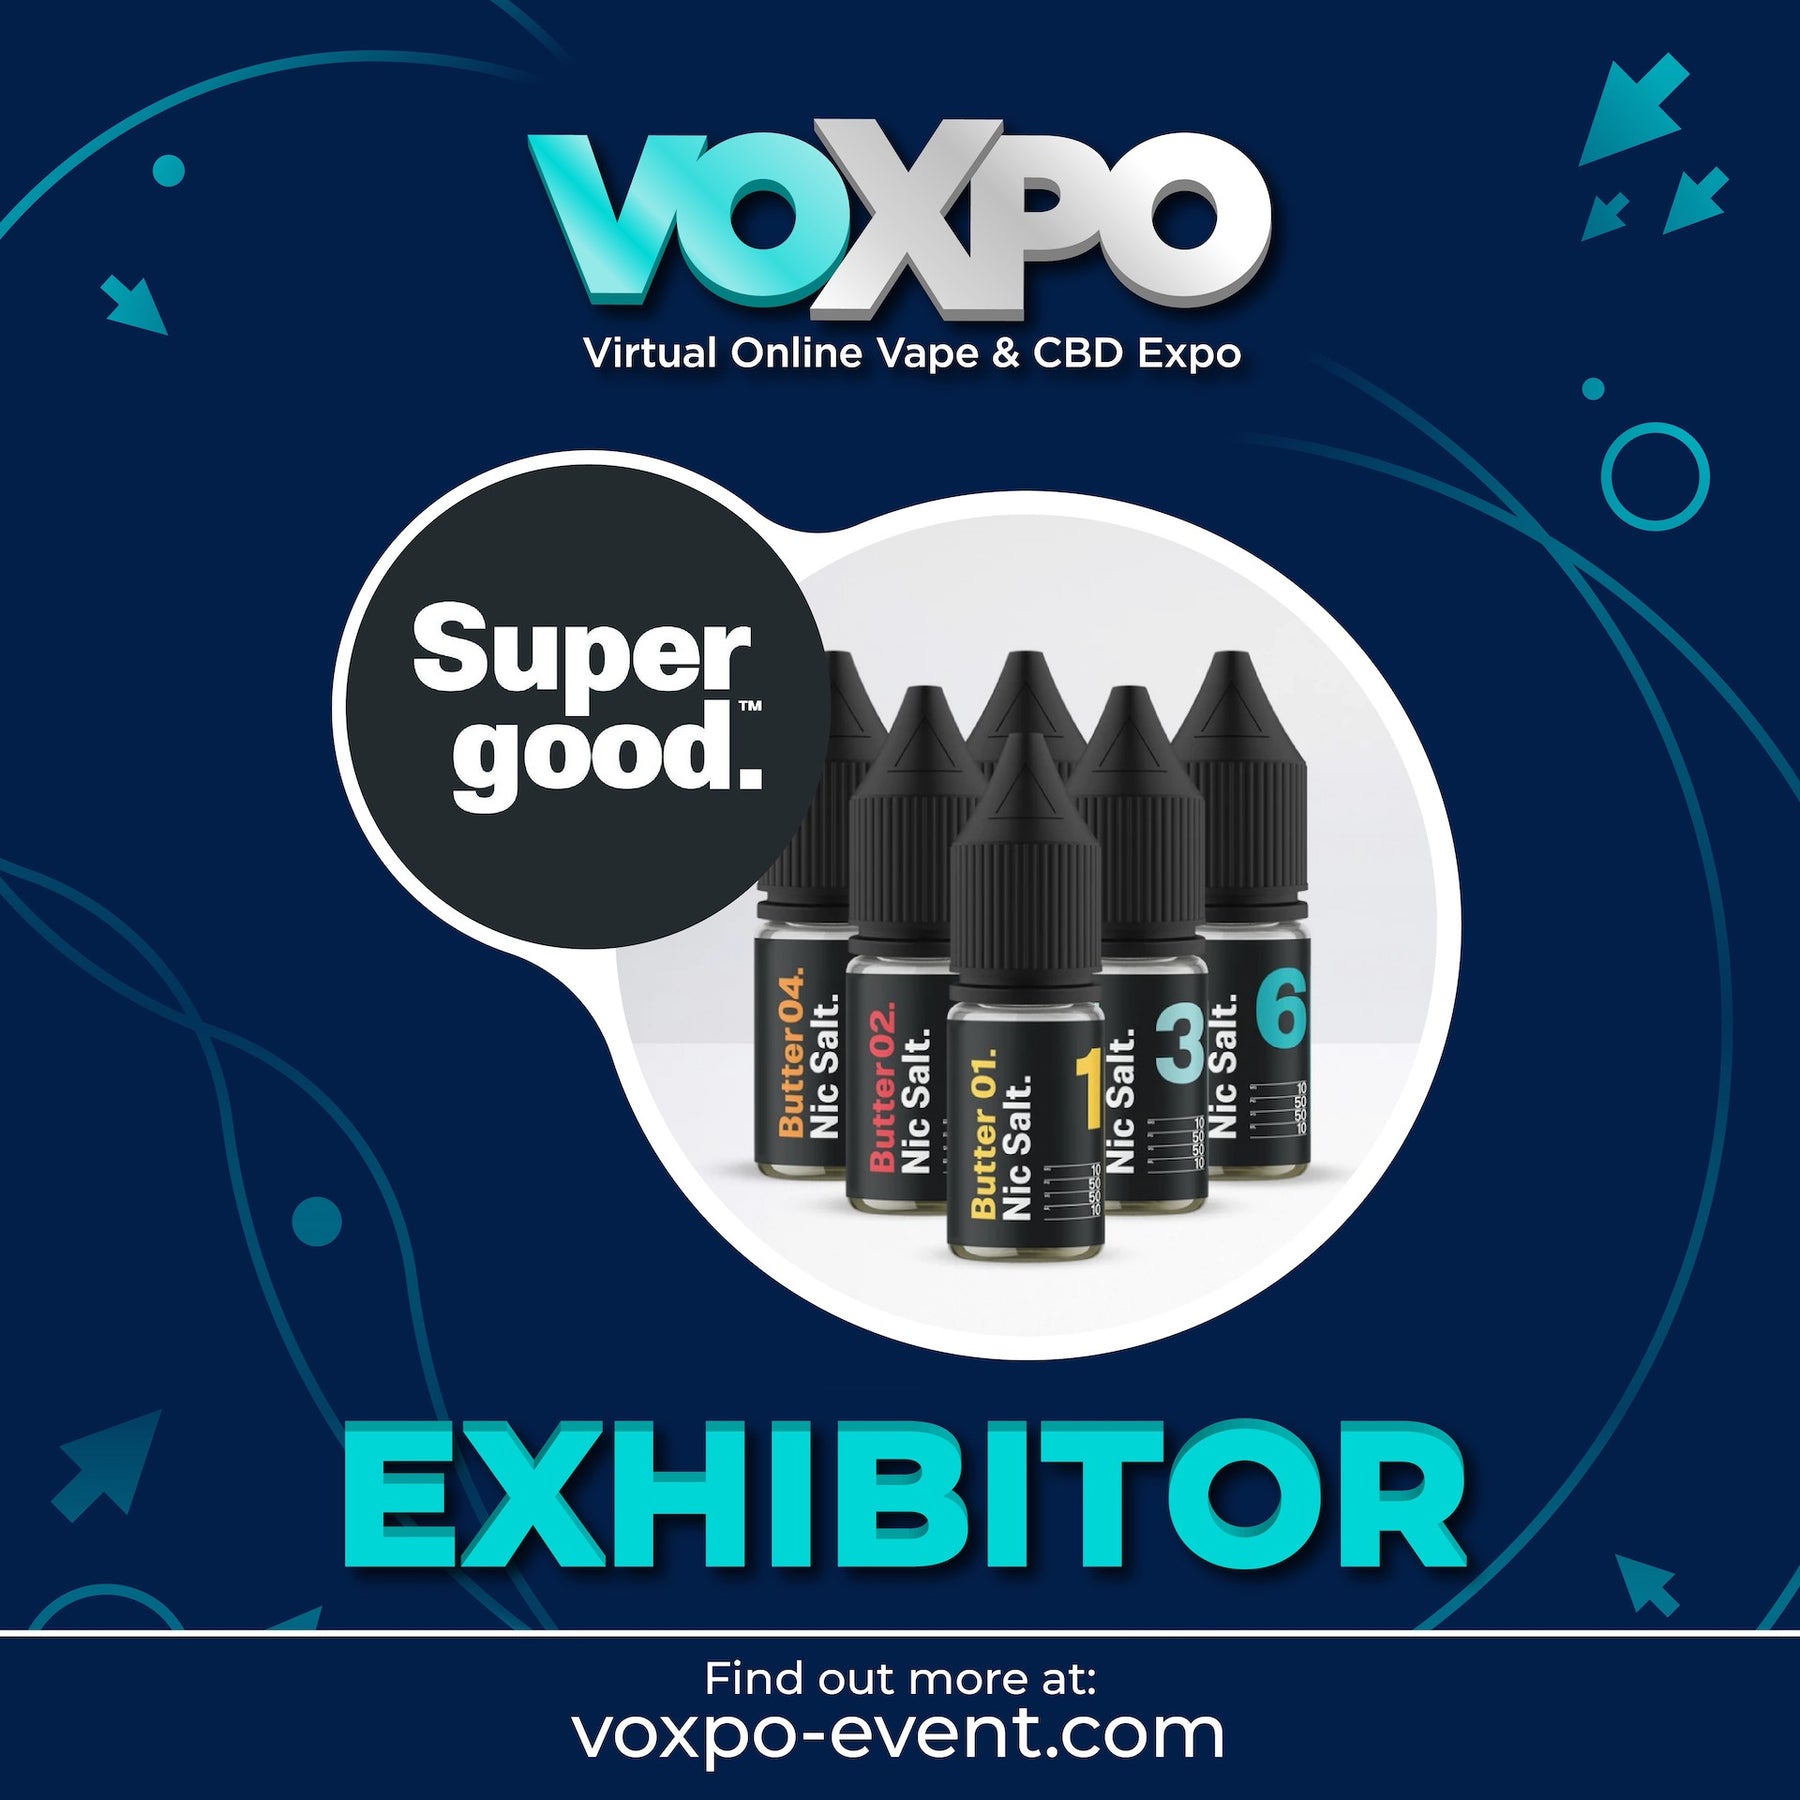 Voxpo X Supergood.